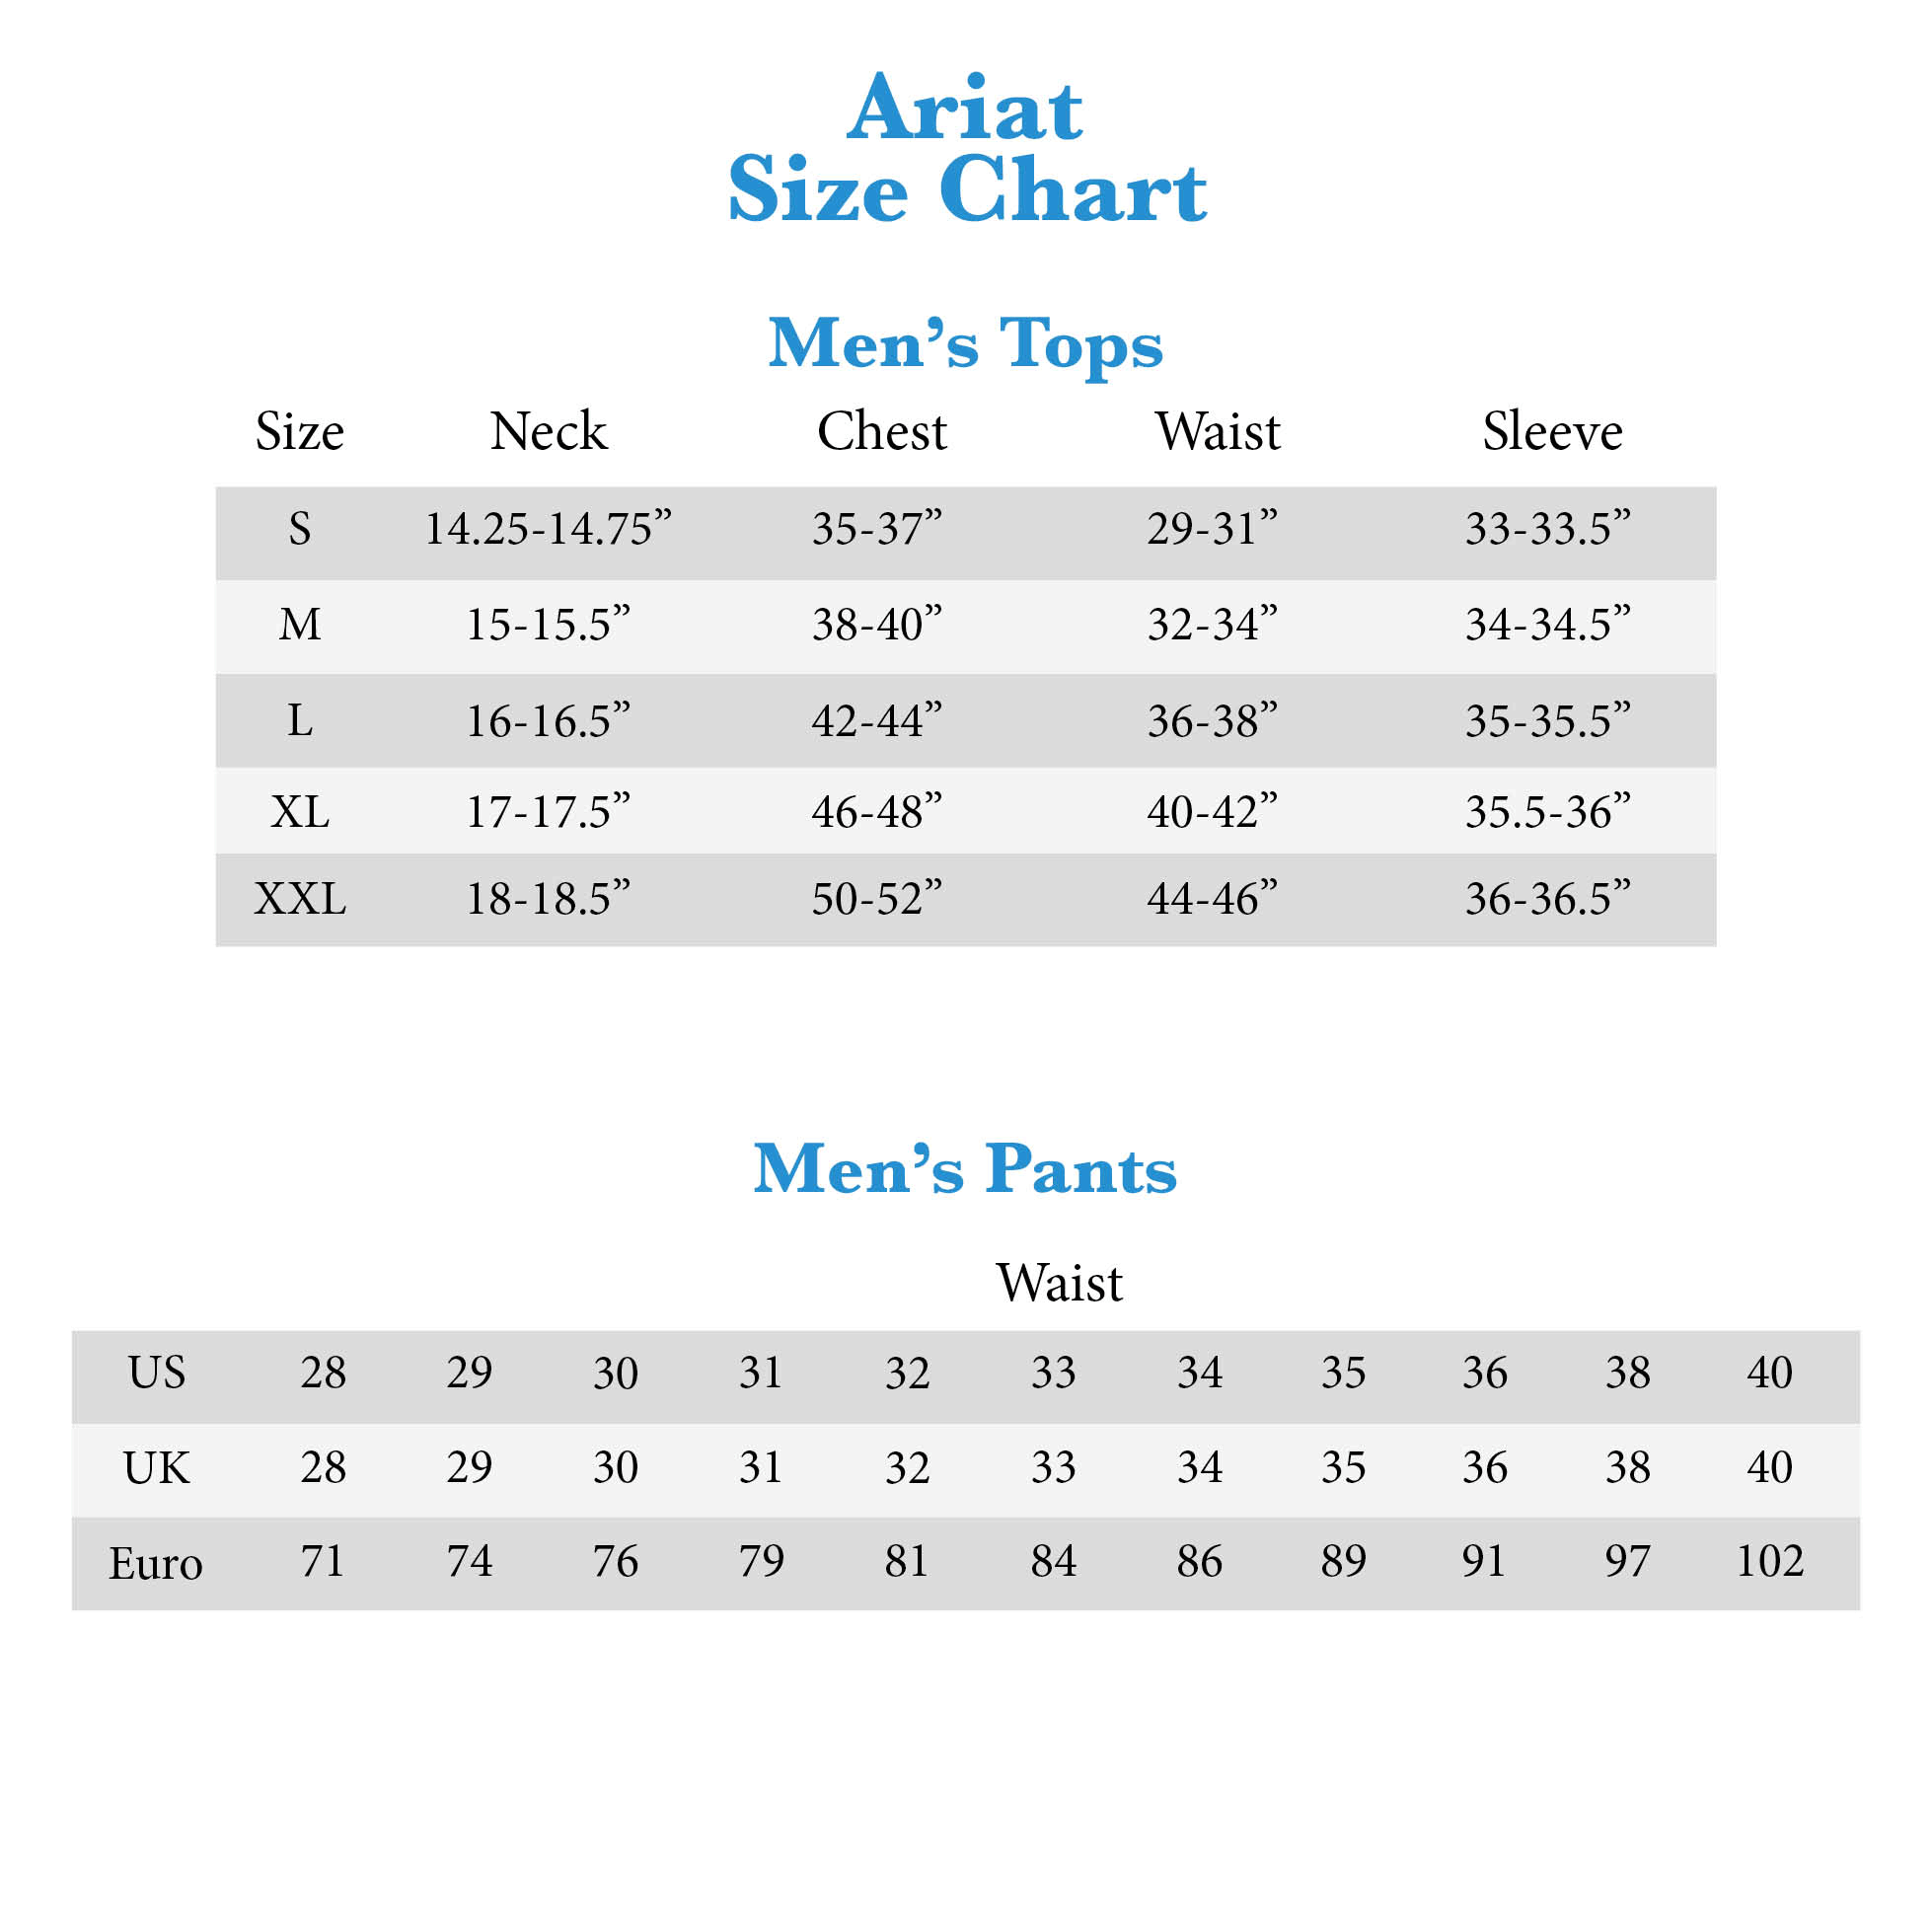 Ariat Show Shirt Size Chart